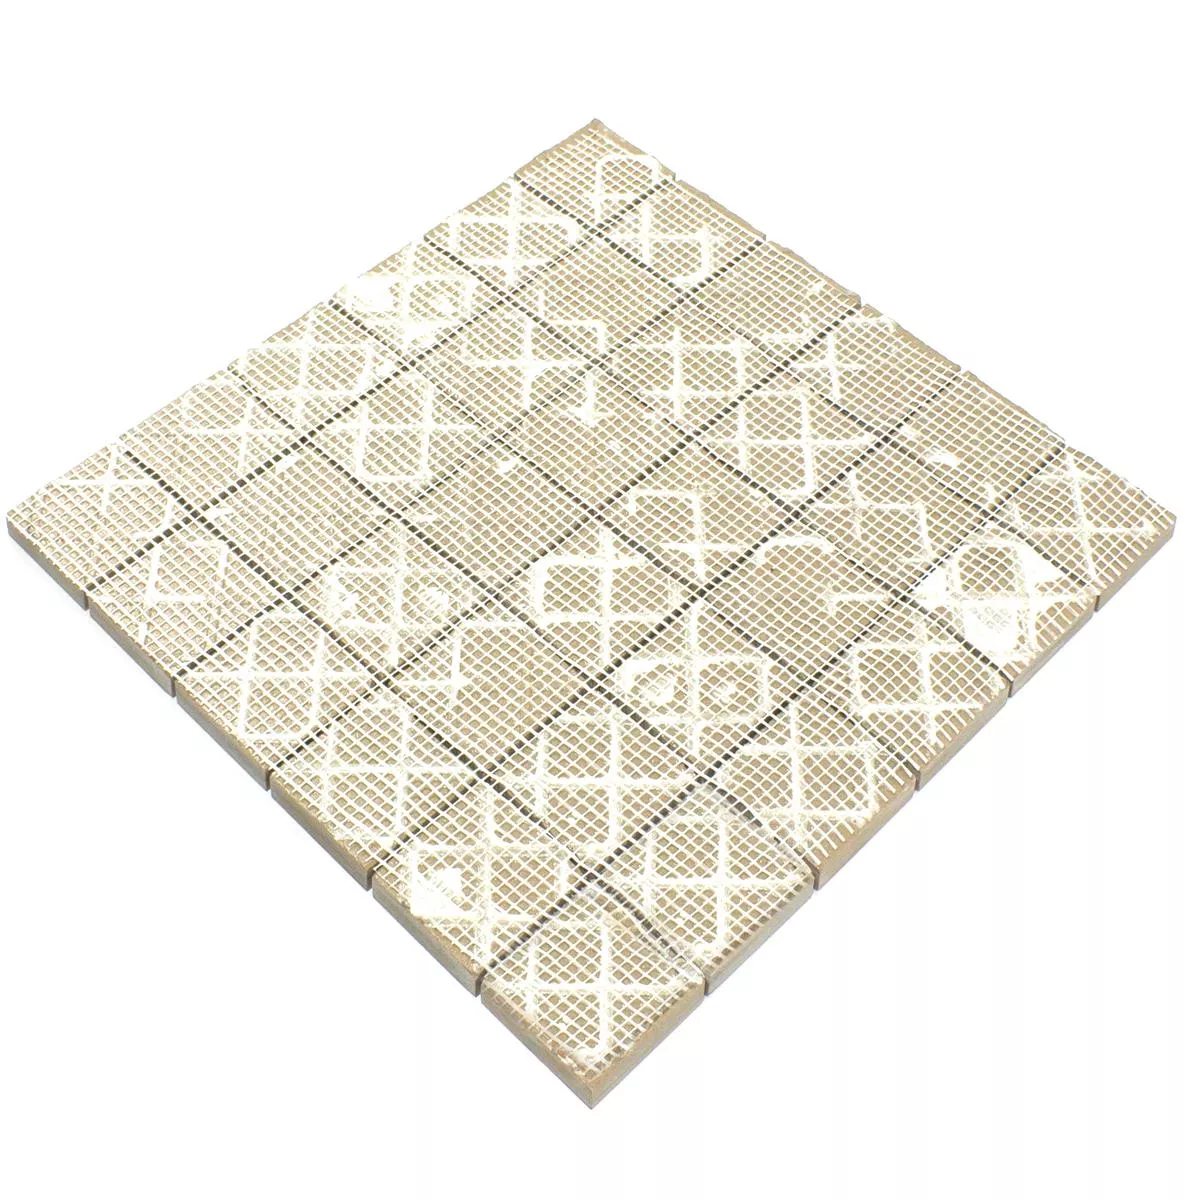 Sample Ceramic Mosaic Tile Ibiza Stone Optic Grey